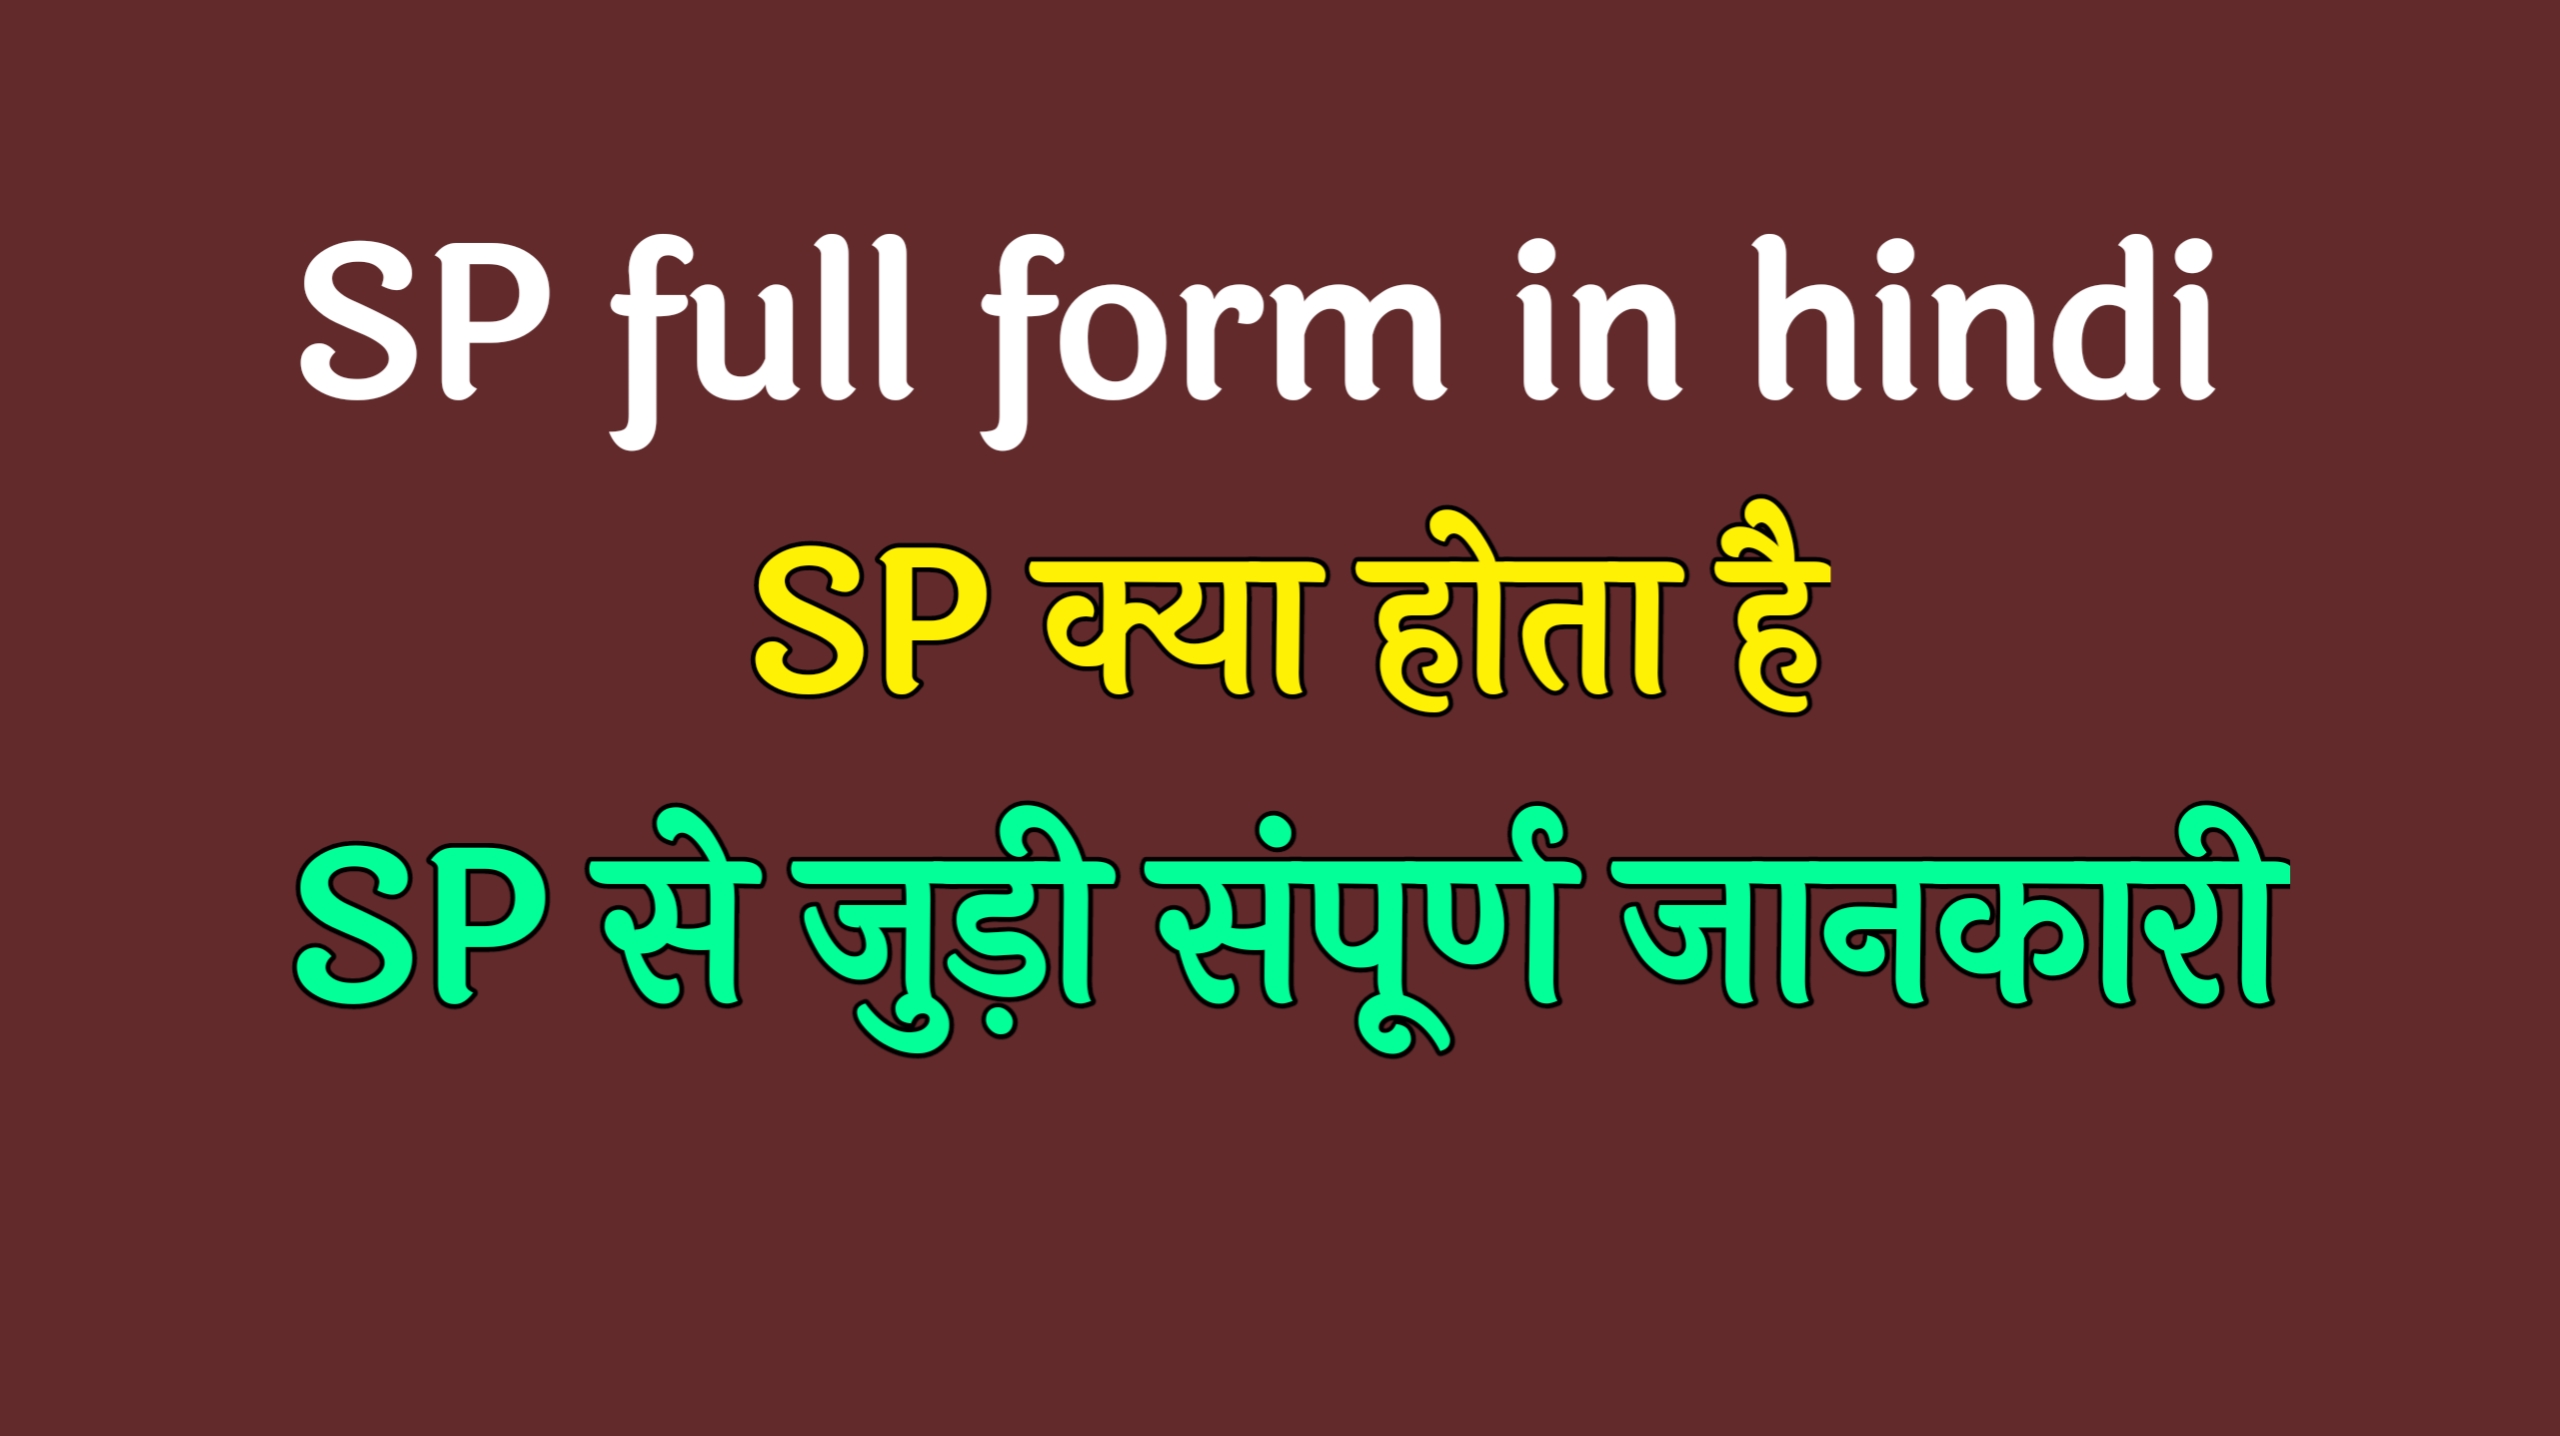 SP full form in hindi | एसपी फुल फॉर्म इन हिंदी,SP full form,एसपी फुल फॉर्म, SP फुल फॉर्म इन हिंदी,SP की चयन प्रक्रिया क्या है,